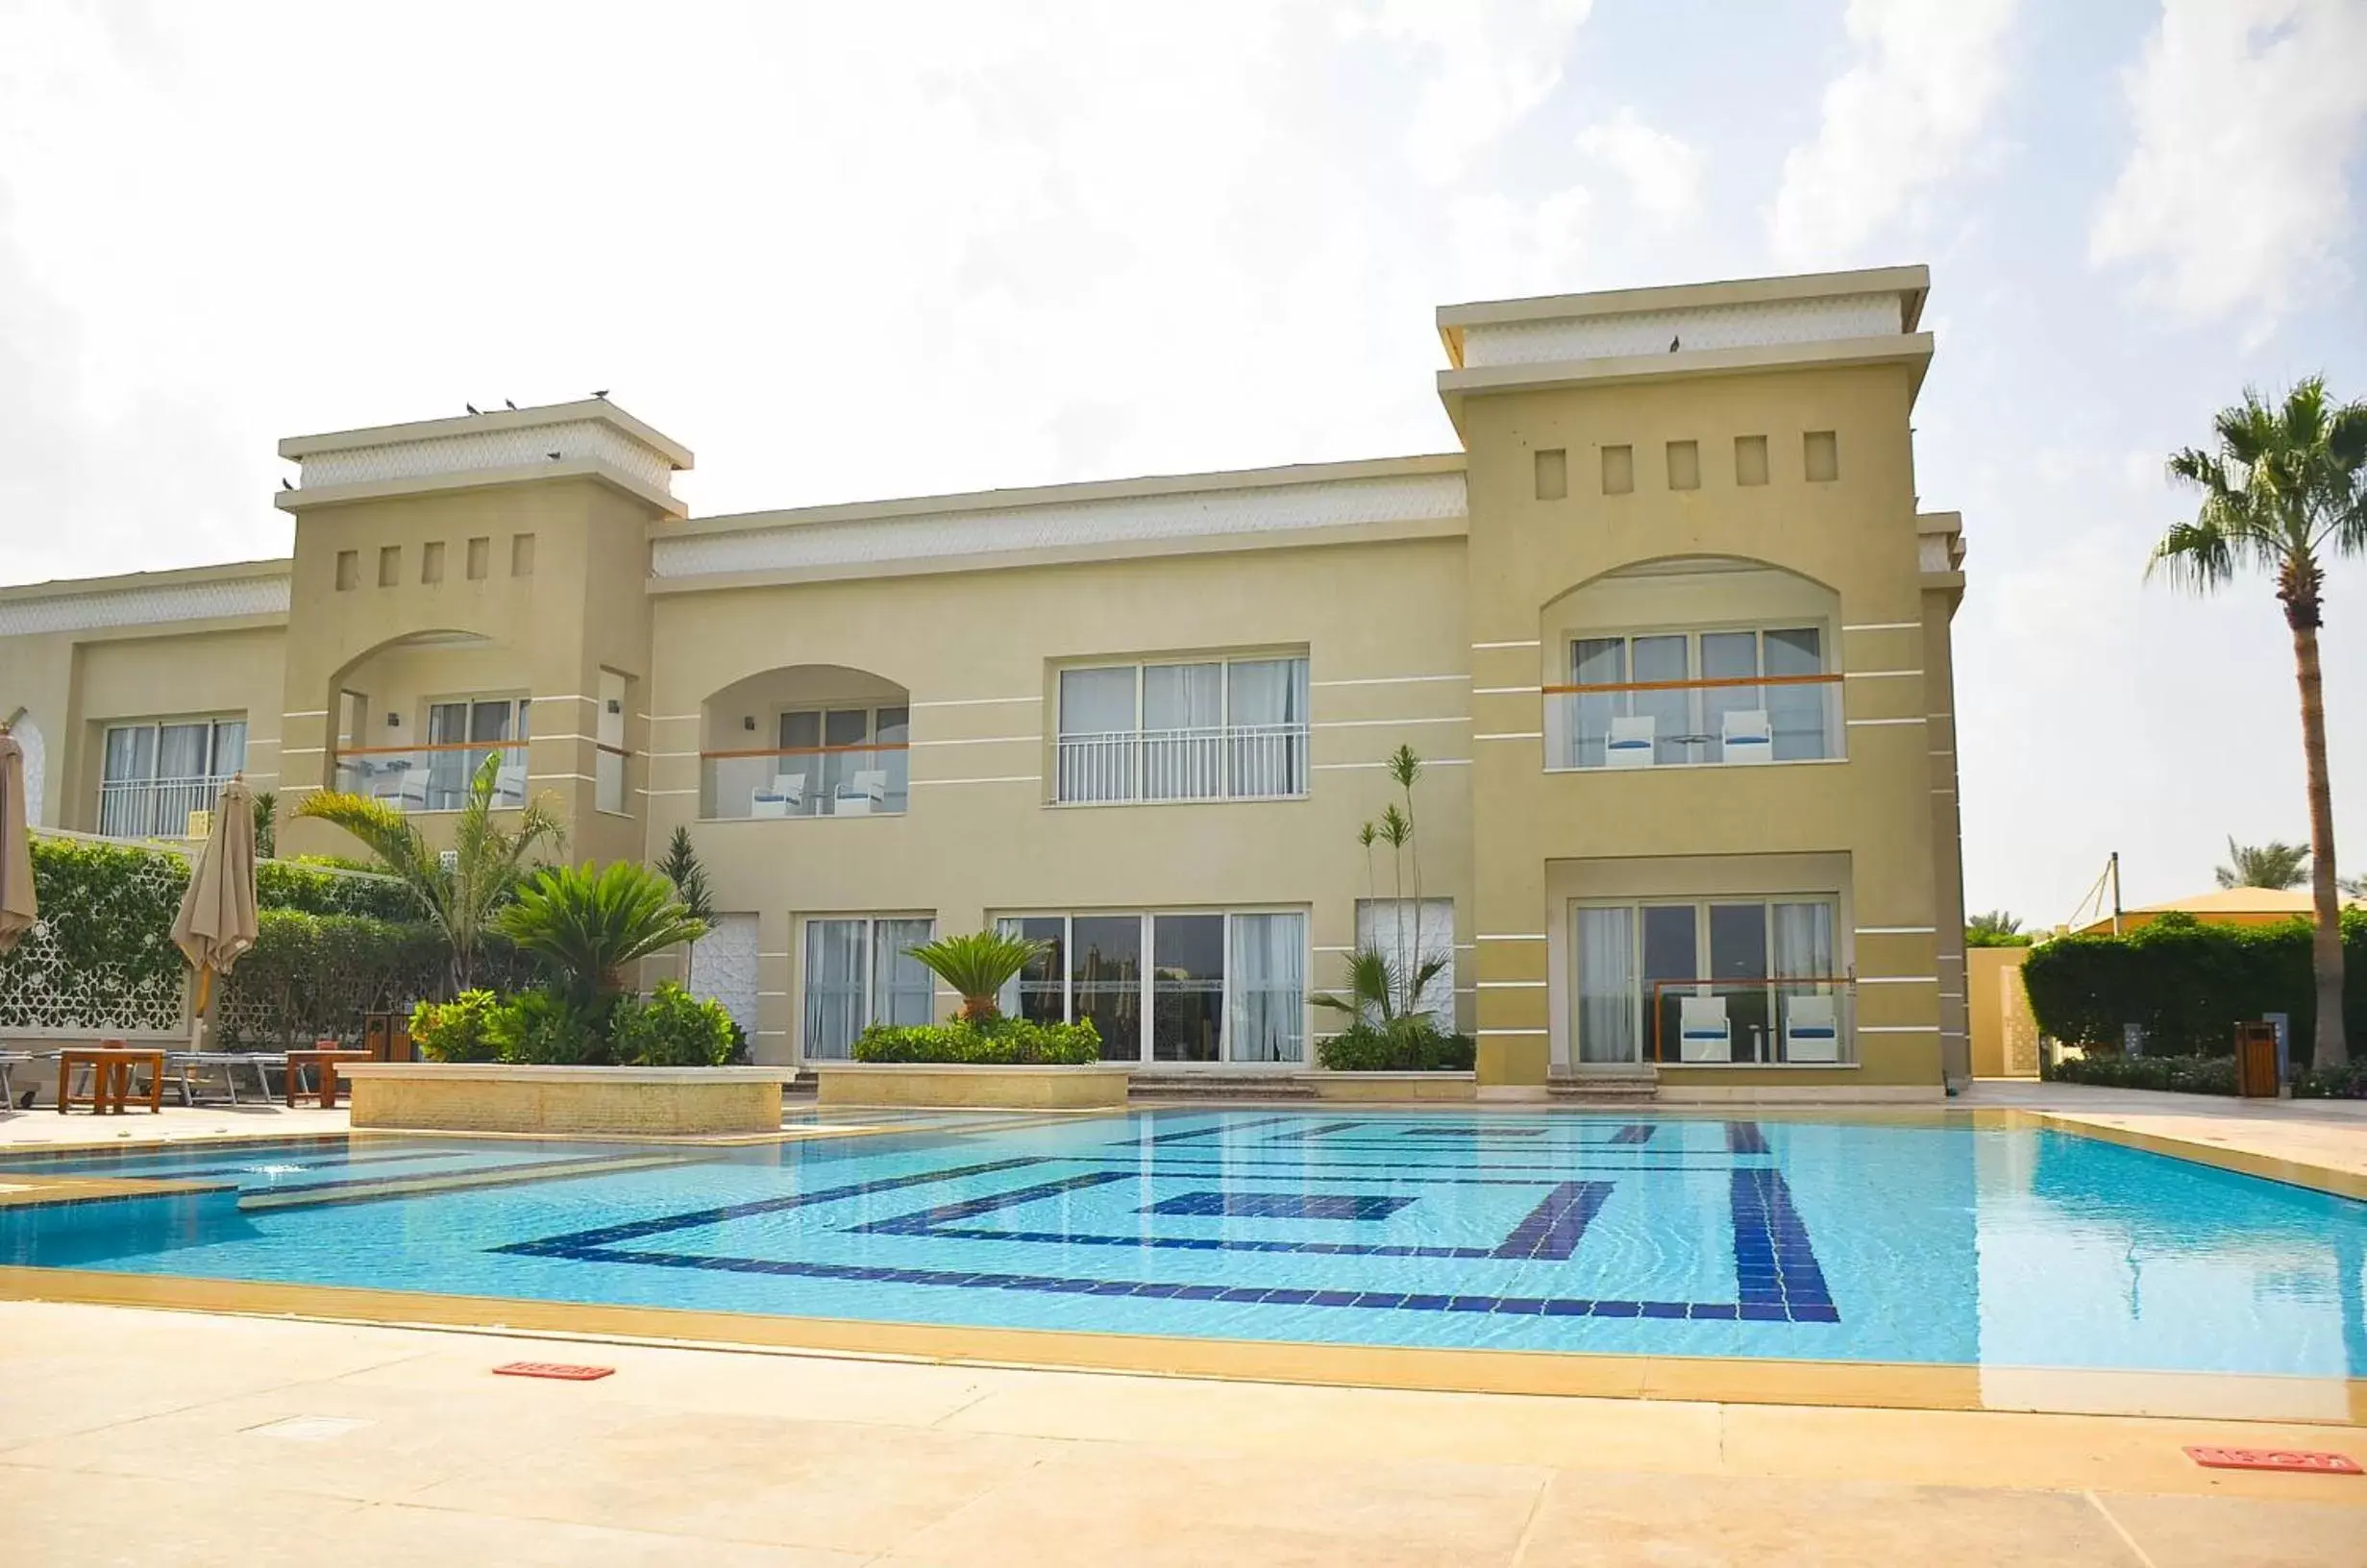 Pool view, Property Building in Pickalbatros Aqua Park Sharm El Sheikh